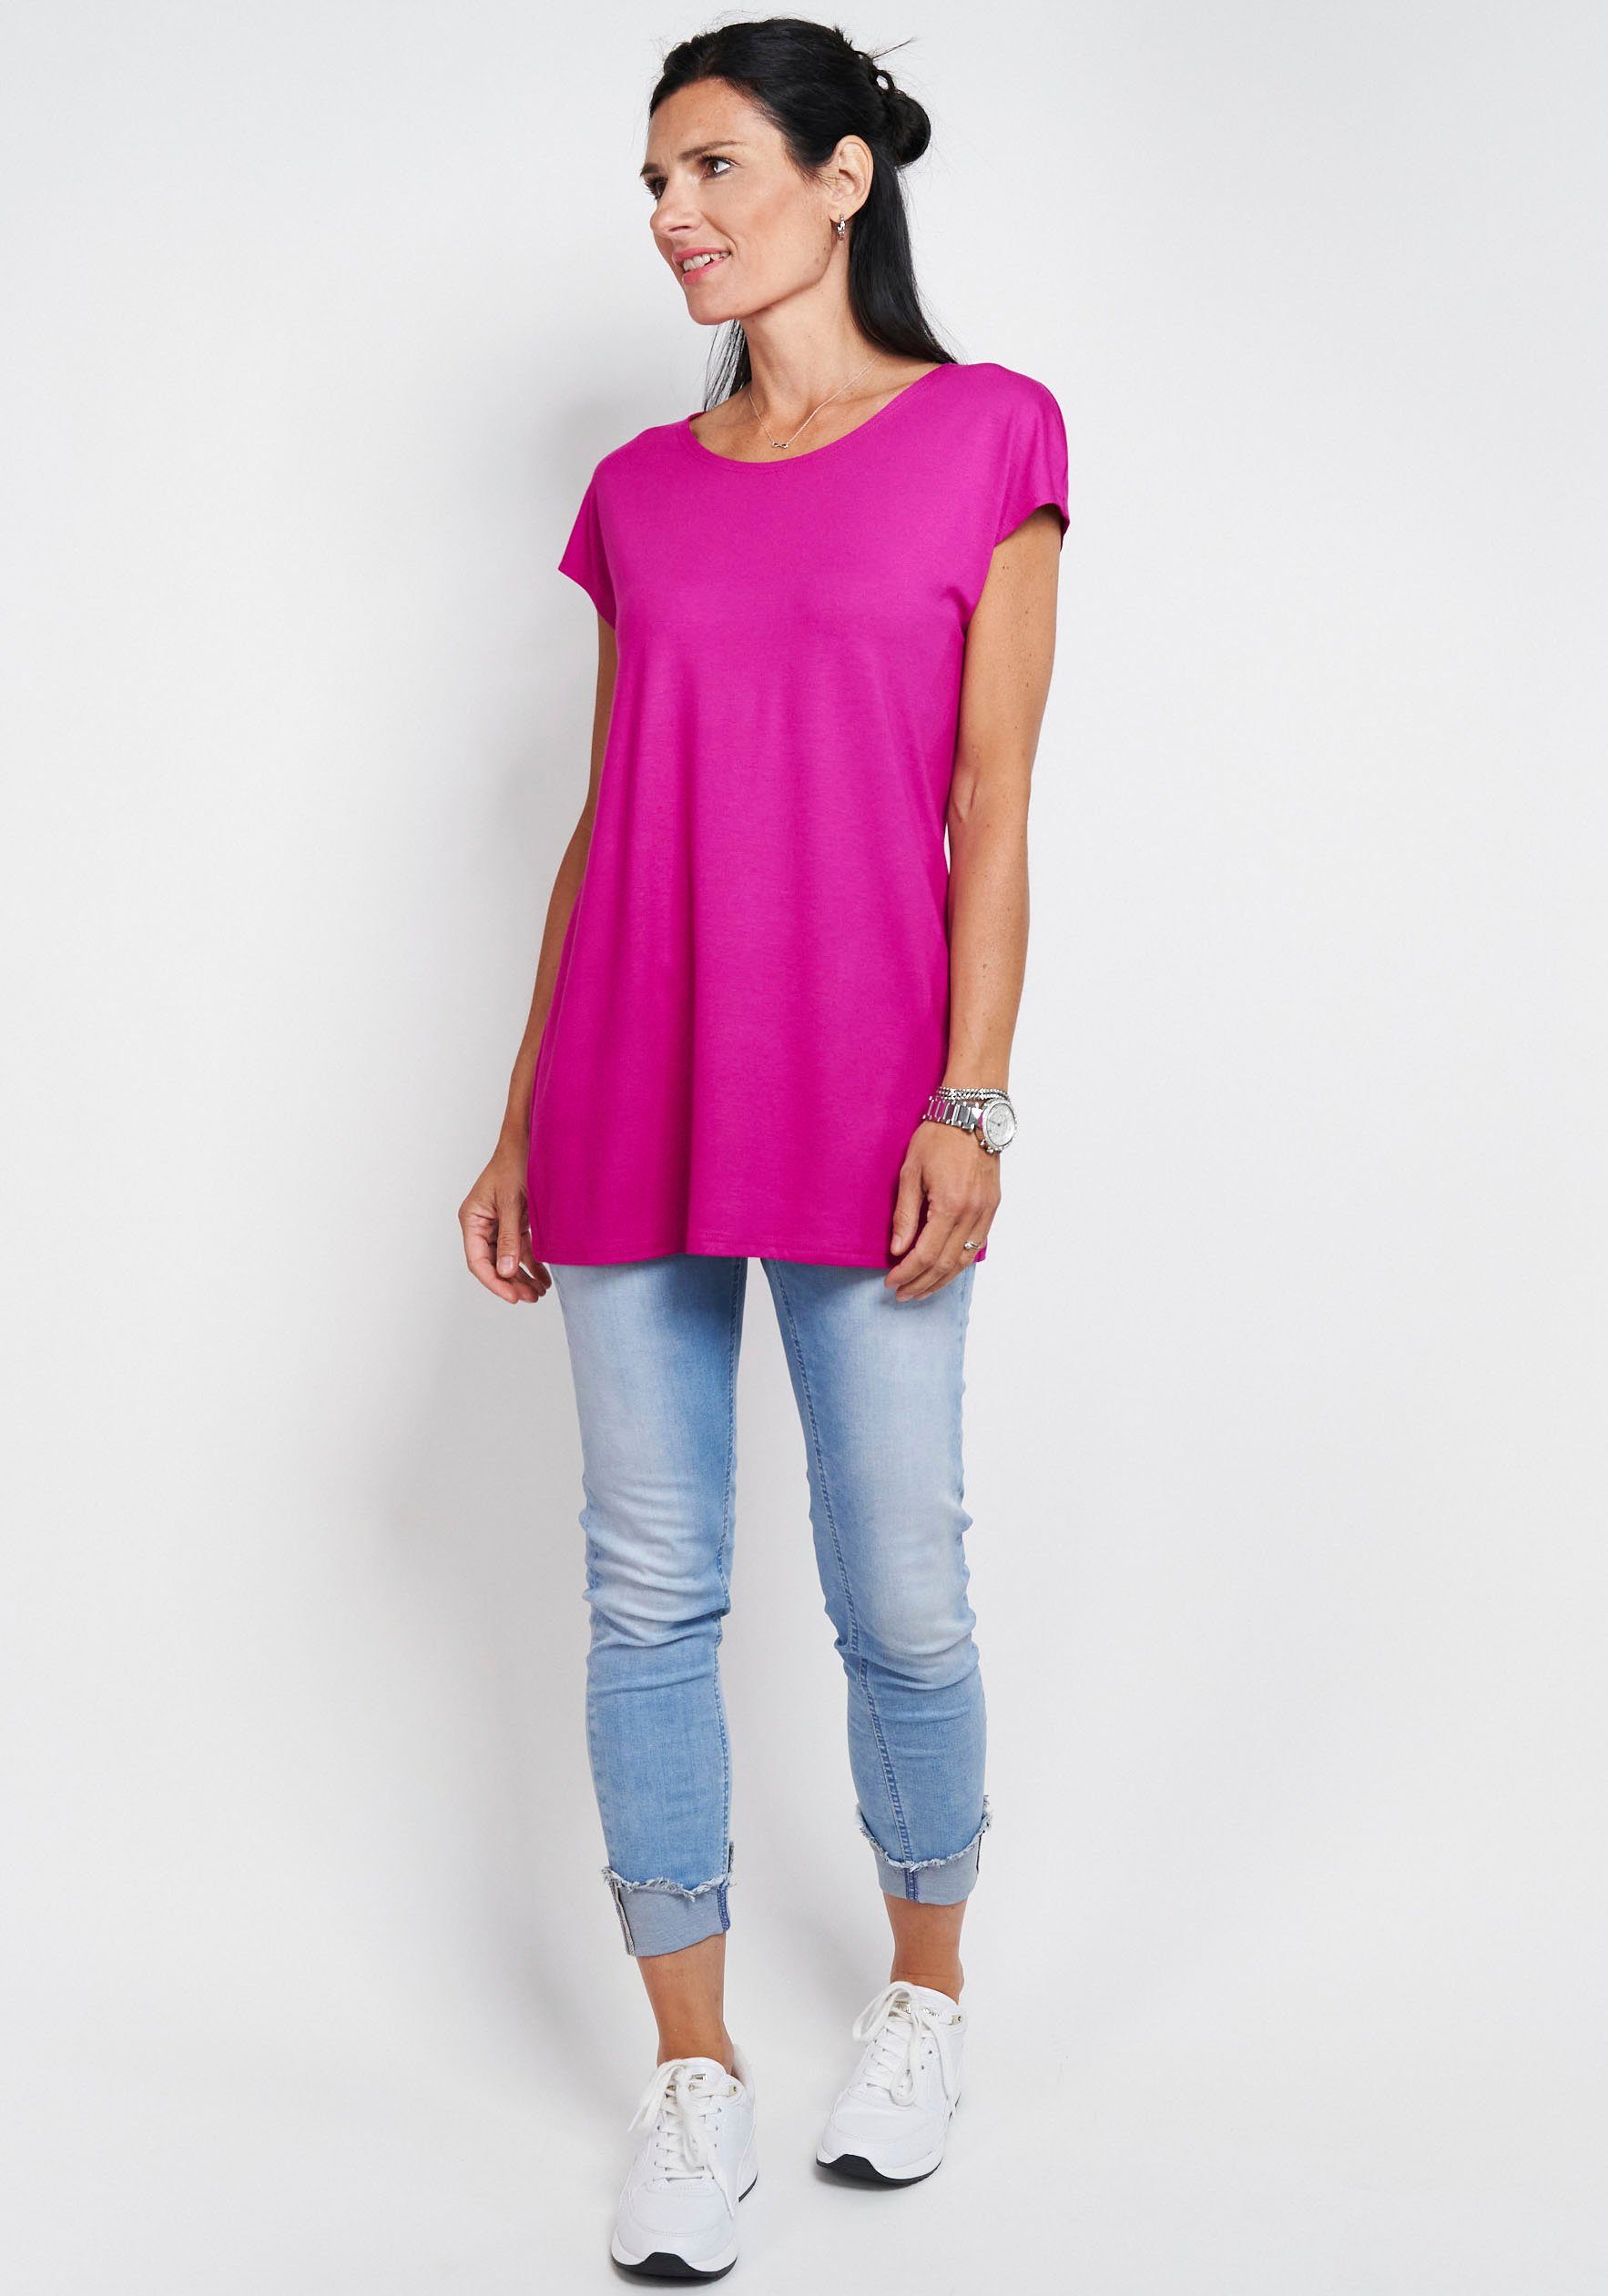 Seidel Moden Longshirt in schlichtem Design magenta | T-Shirts